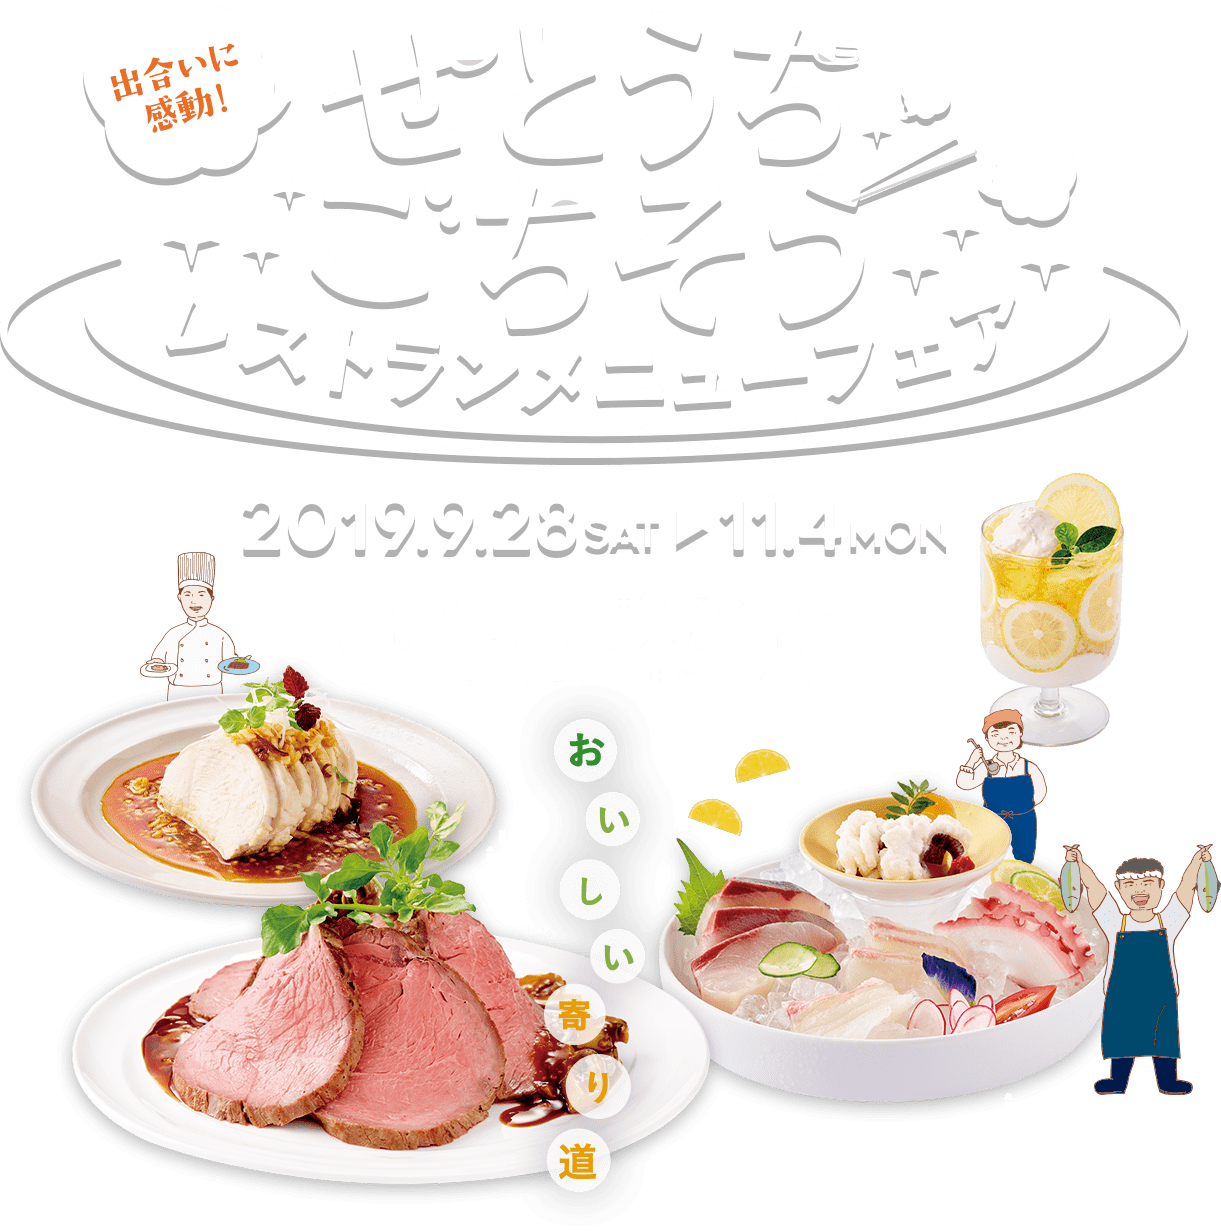 せとうちごちそうレストランメニューフェア2019.9.28→11.4